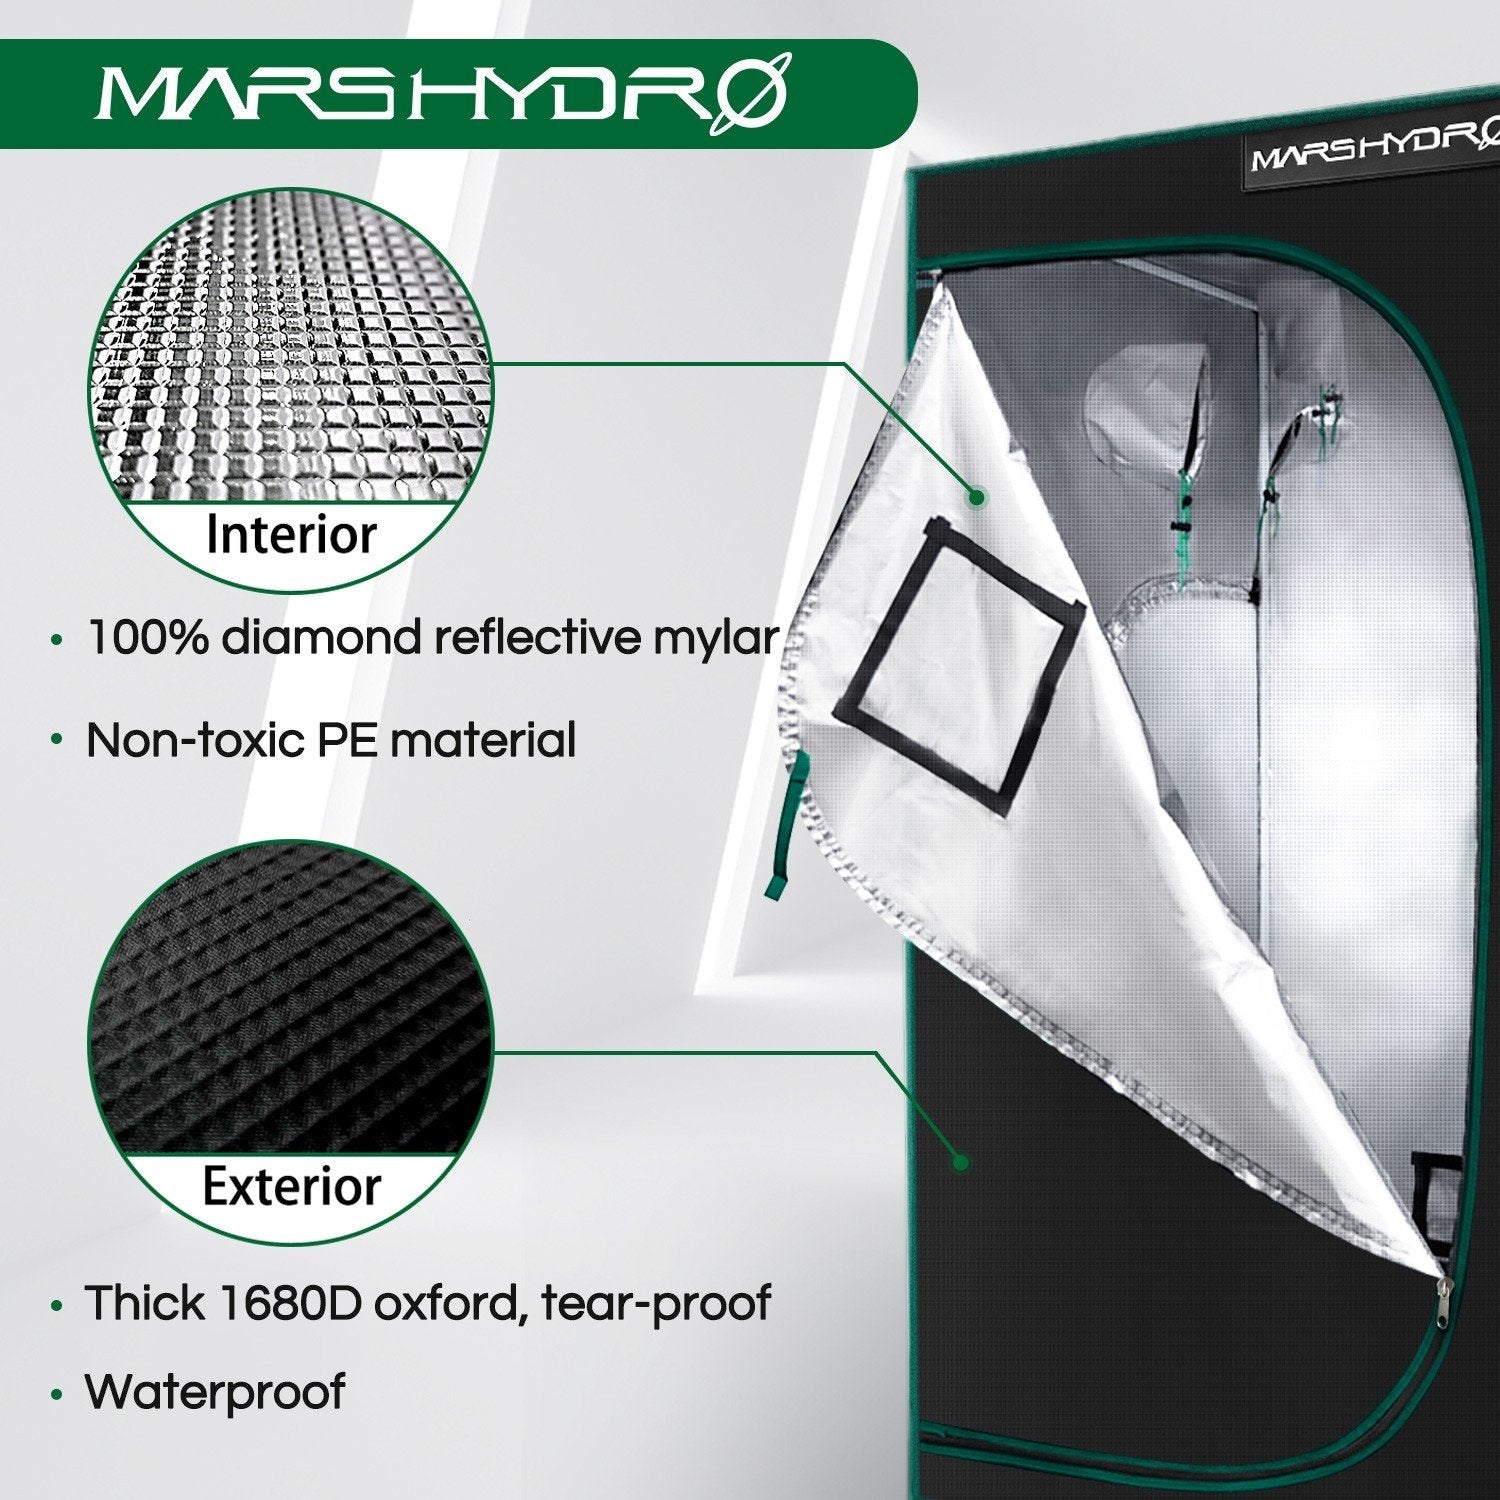 Mars Hydro Grow Tent Full Kit 4′ x 4′ x 6.5′